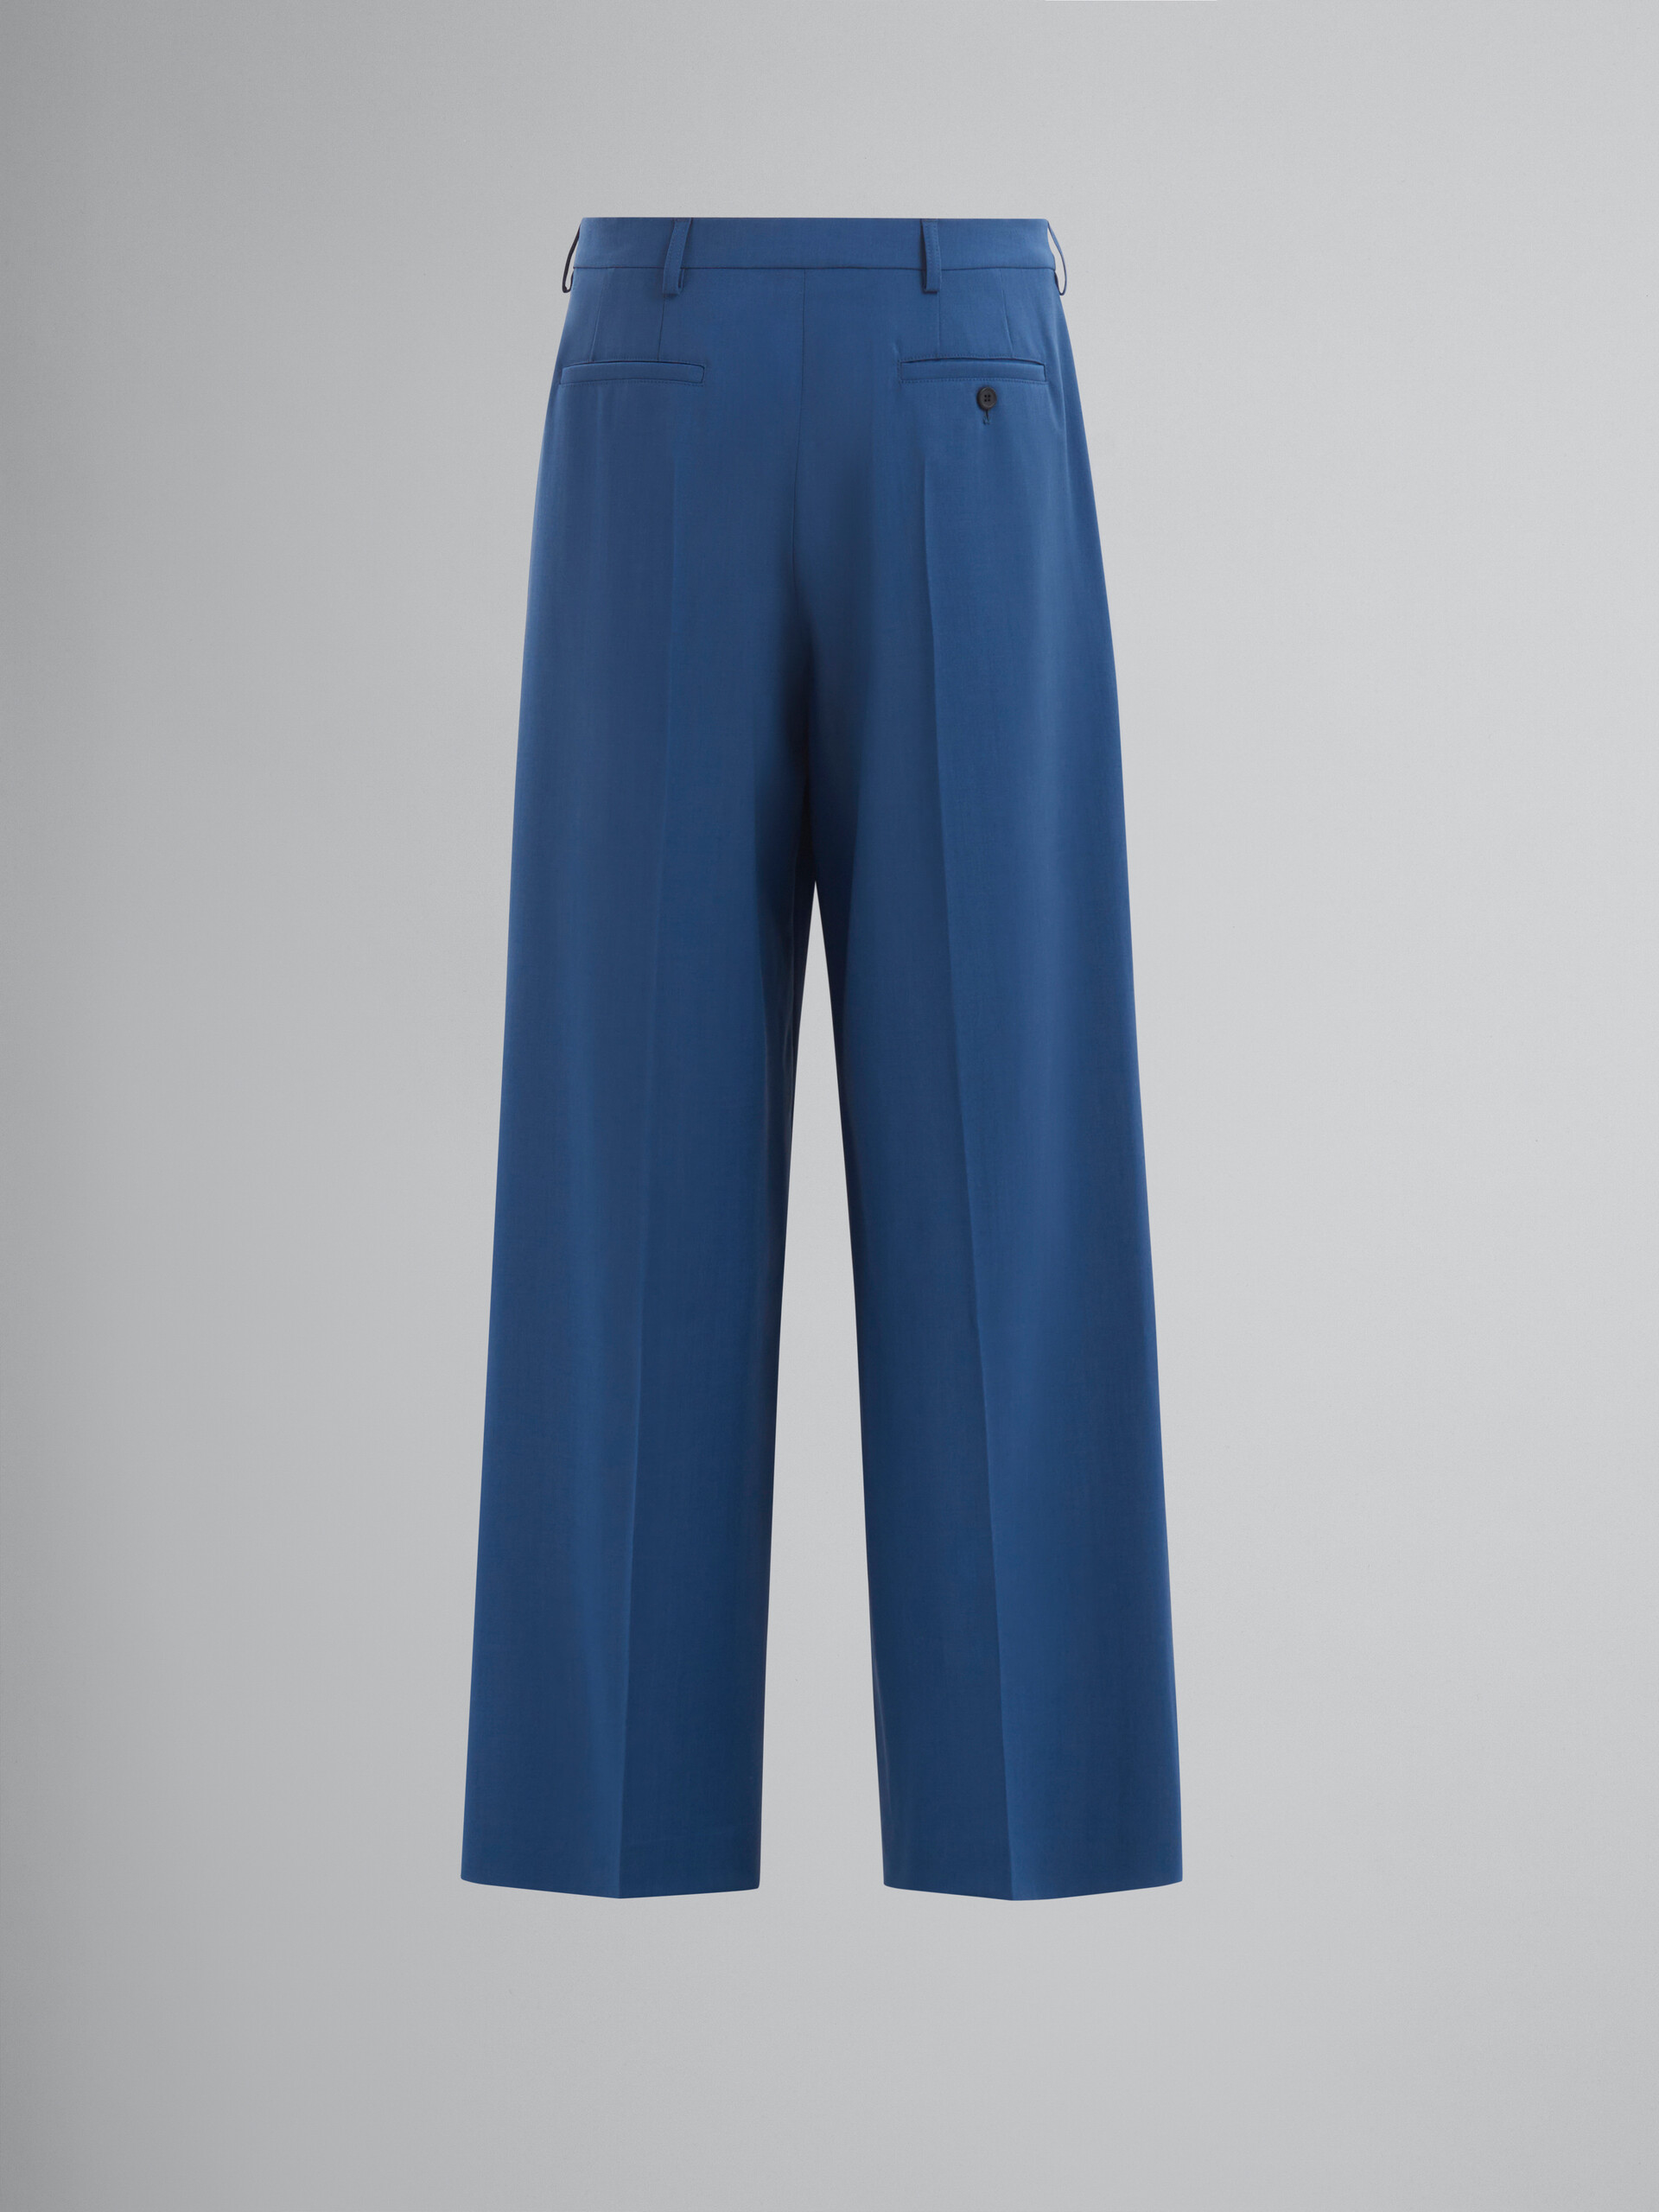 Blaue Hose aus Wolle und Mohair mit Falten - Hosen - Image 2